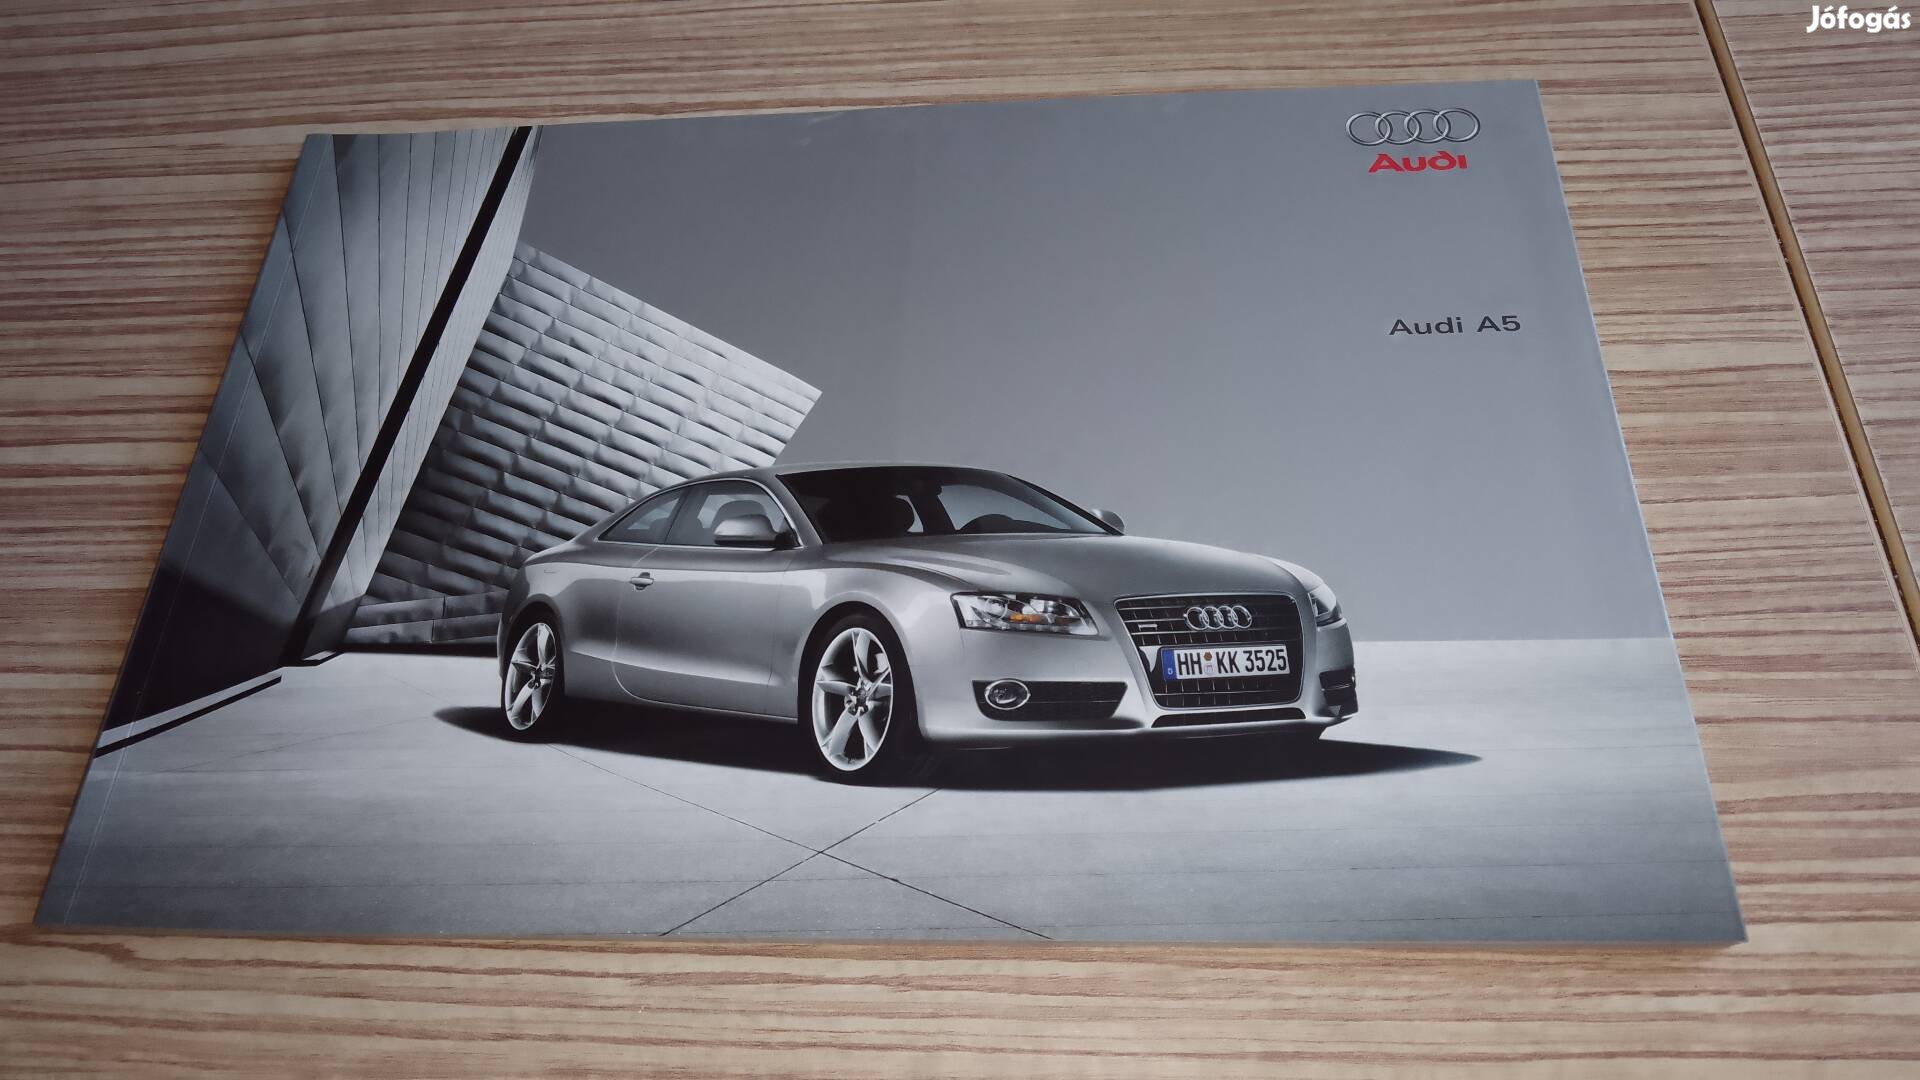 Audi A5 coupe (2007) prospektus, katalógus.